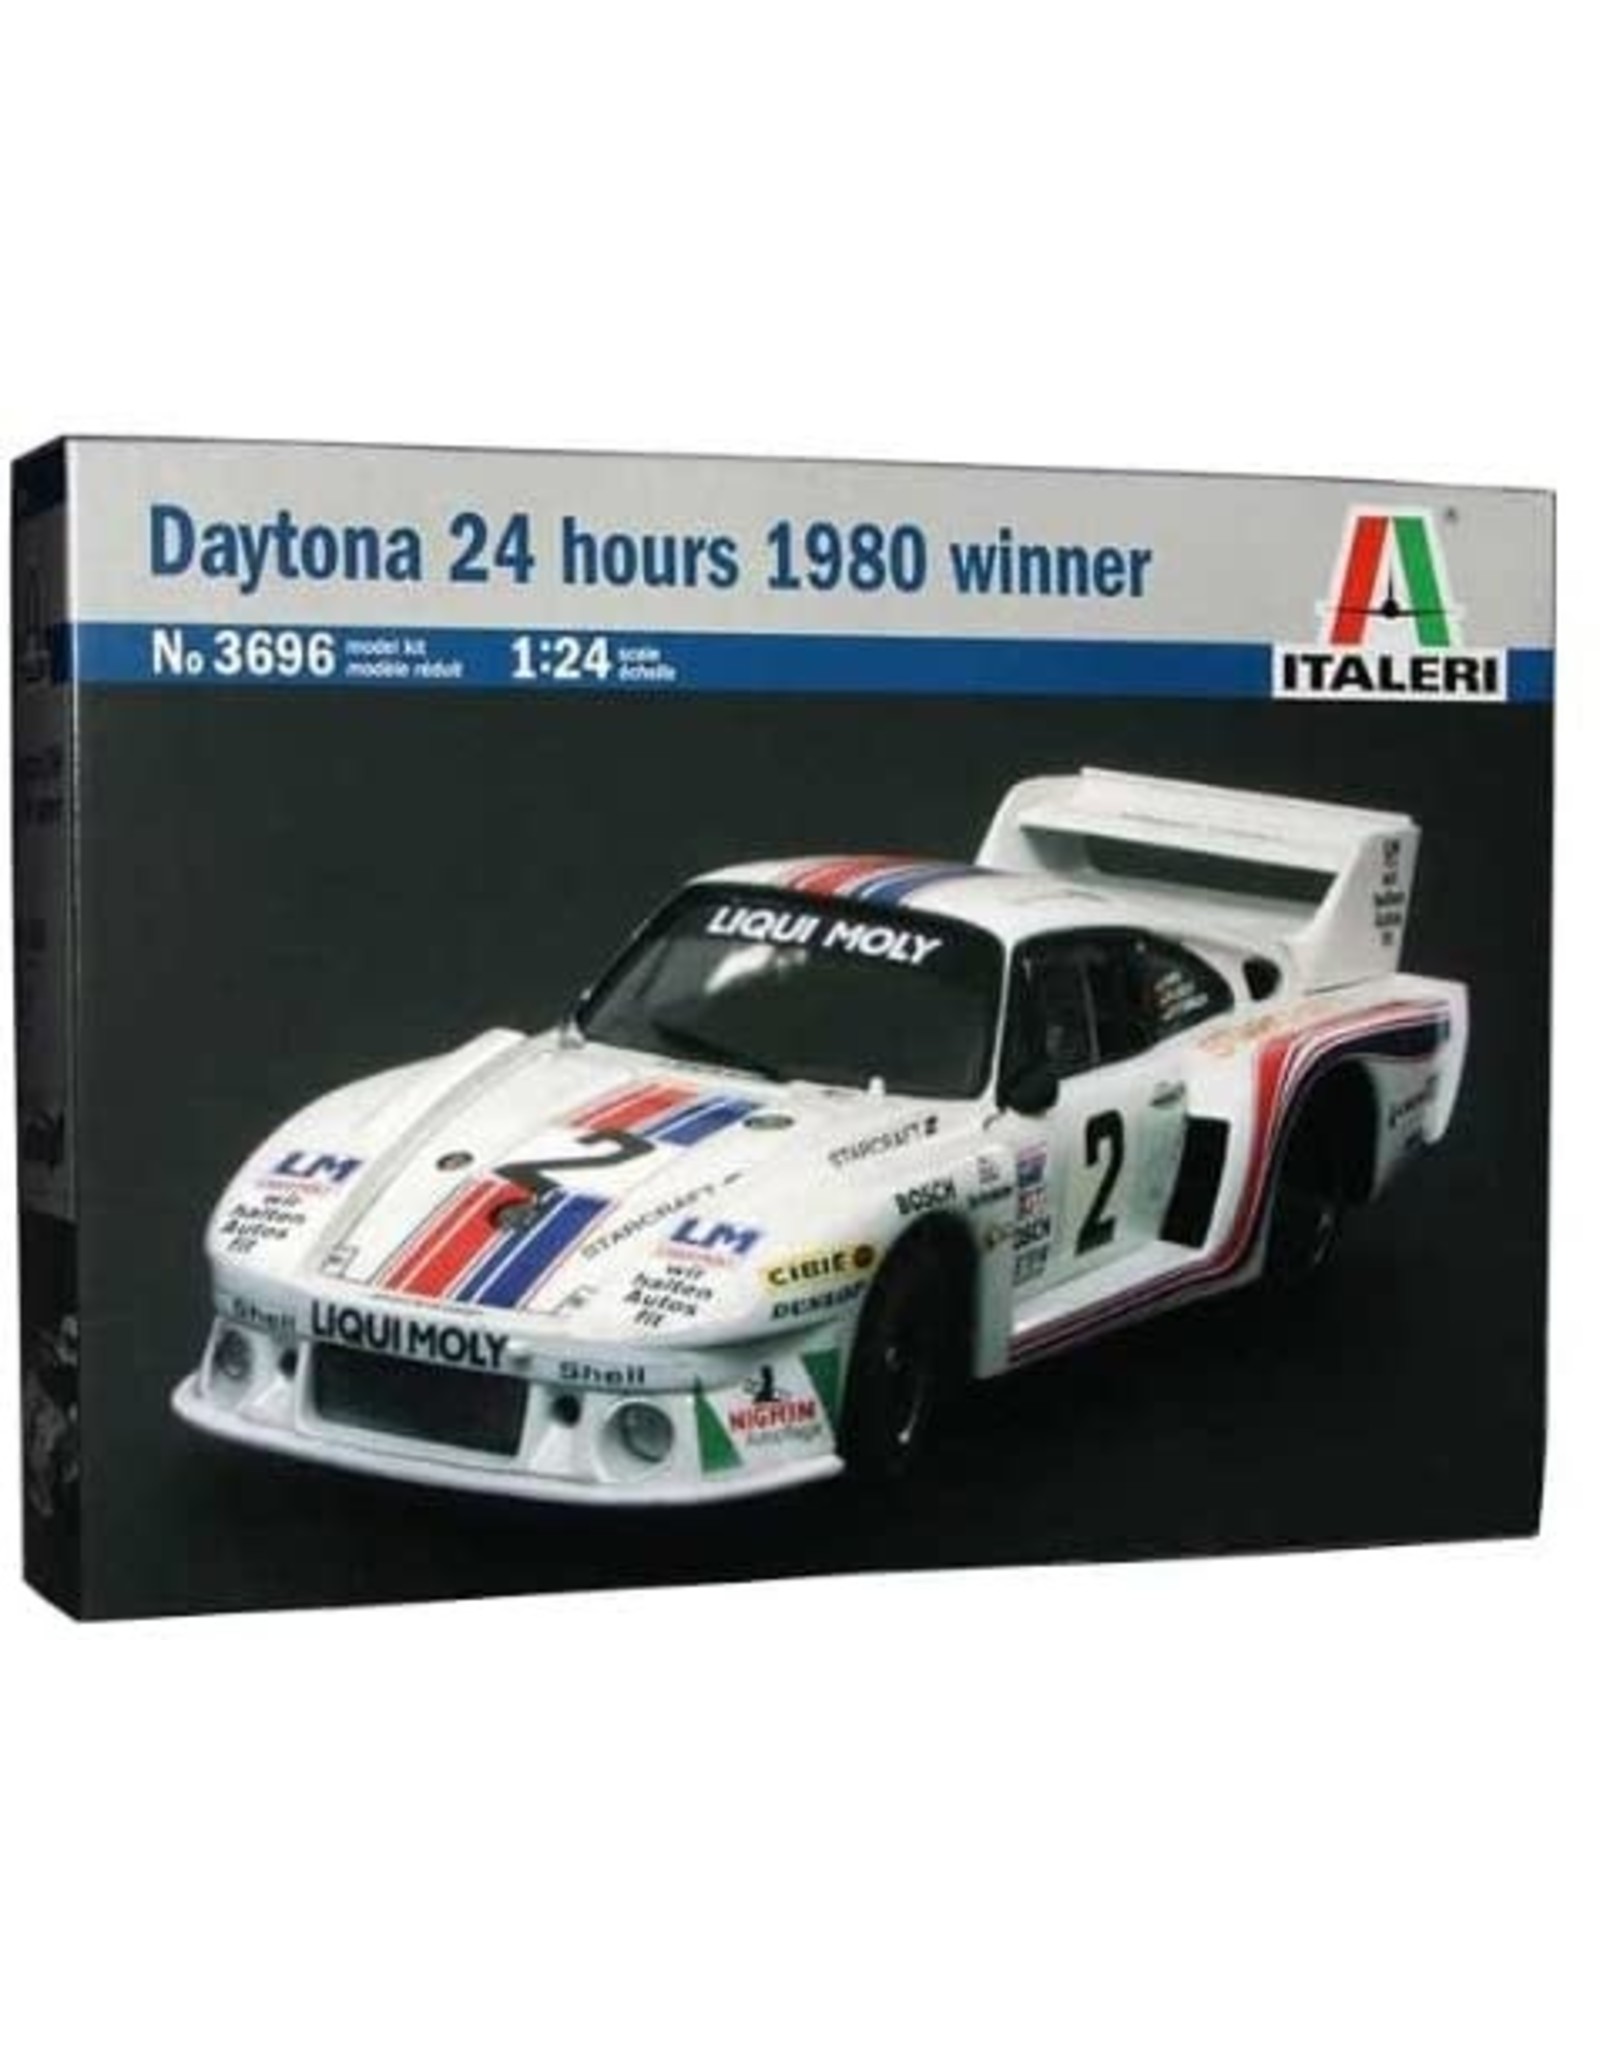 Italeri Daytona 24 hours 1980 winner